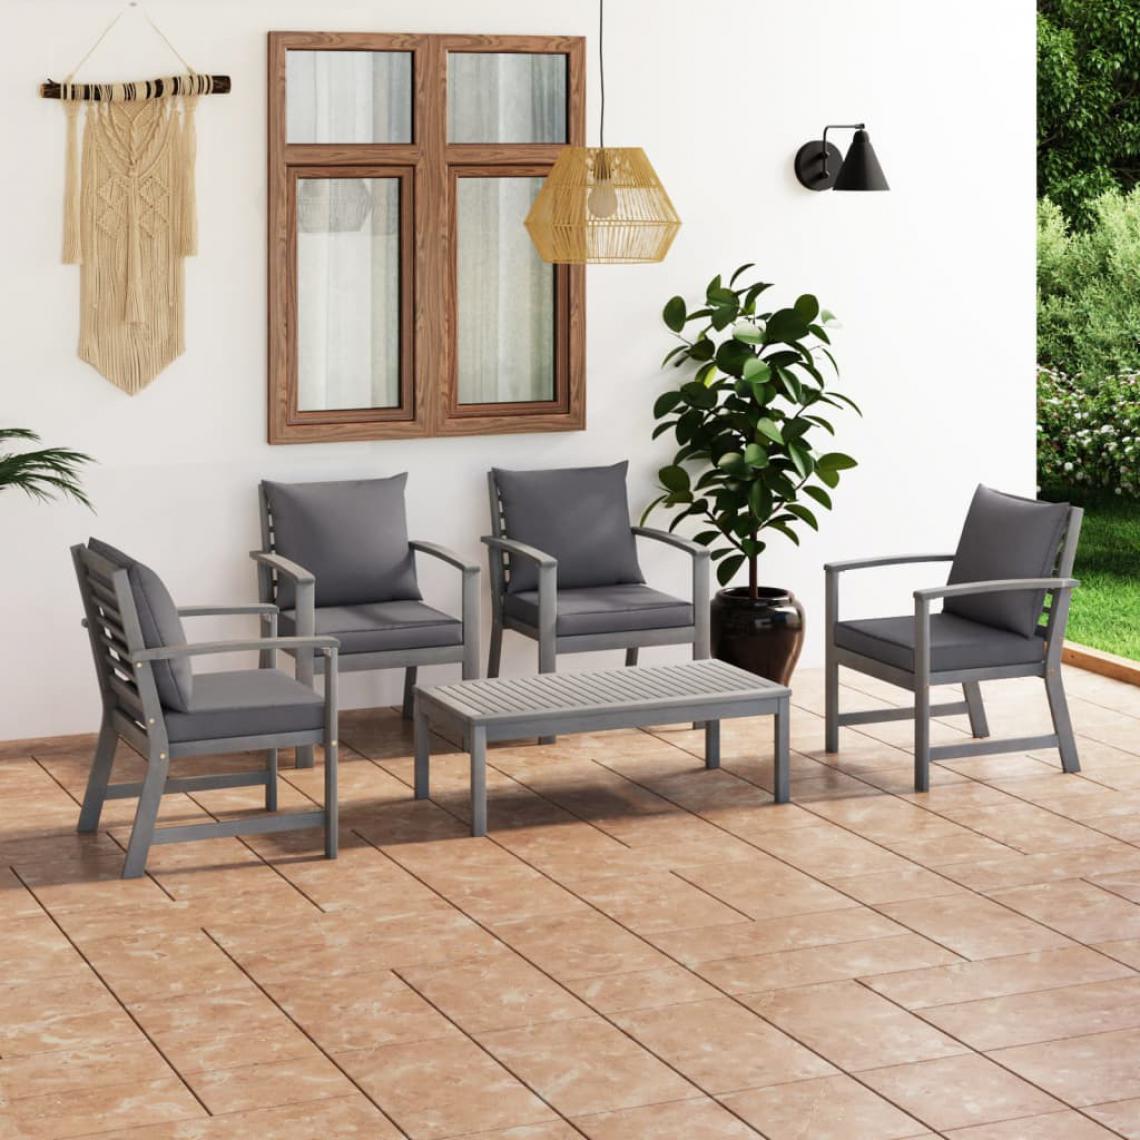 Chunhelife - Salon de jardin 5 pcs avec coussin Bois d'acacia solide Gris - Ensembles canapés et fauteuils